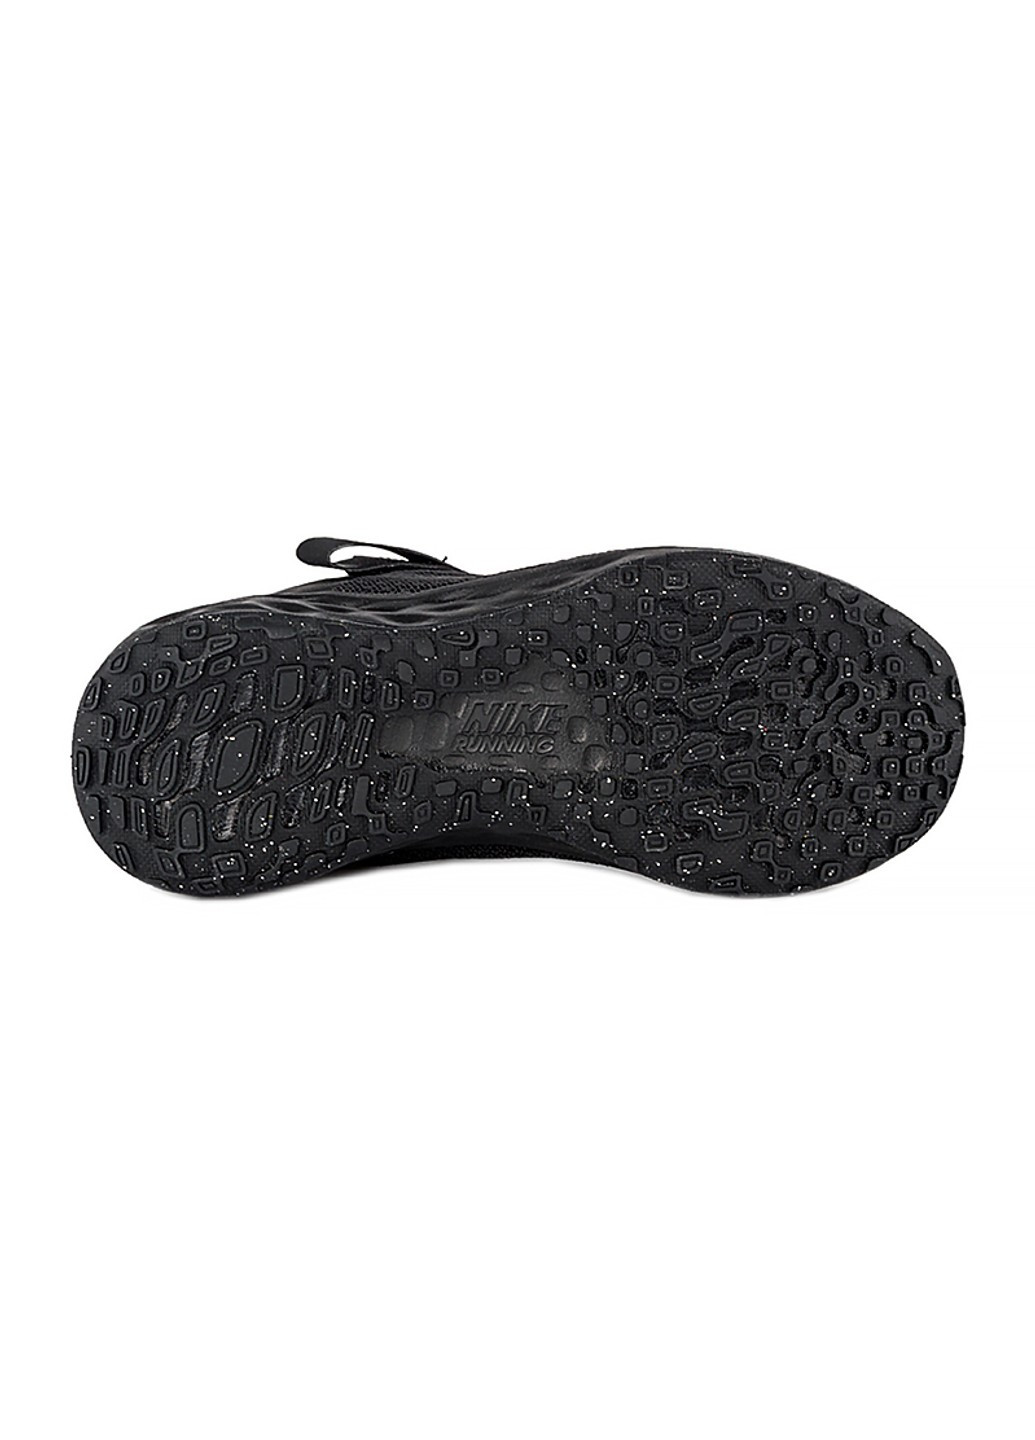 Черные демисезонные кроссовки revolution 6 flyease nn (ps) Nike